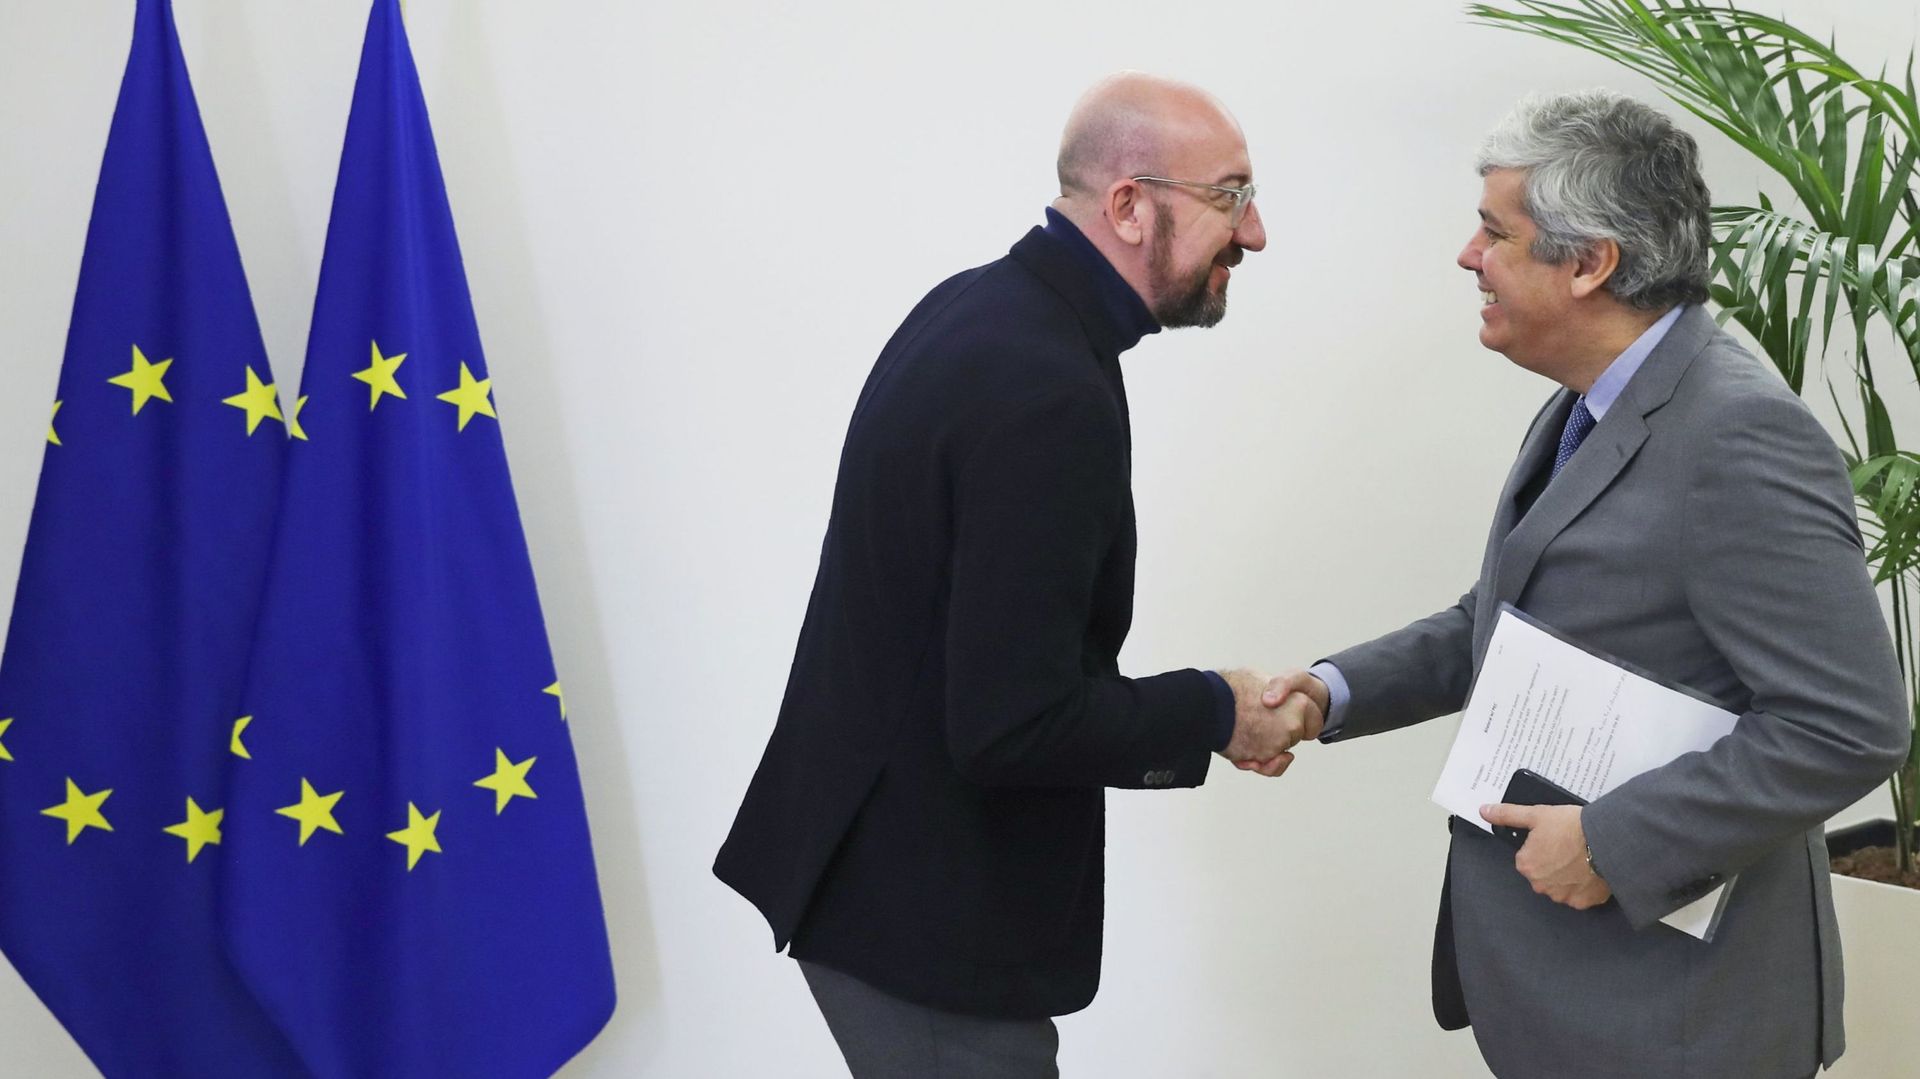 Le président du Conseil européen Charles Michel (à gauche) serre la main du président de l'Eurogroupe Mario Centeno avant leur rencontre au bâtiment Europa à Bruxelles le 20 janvier 2020.